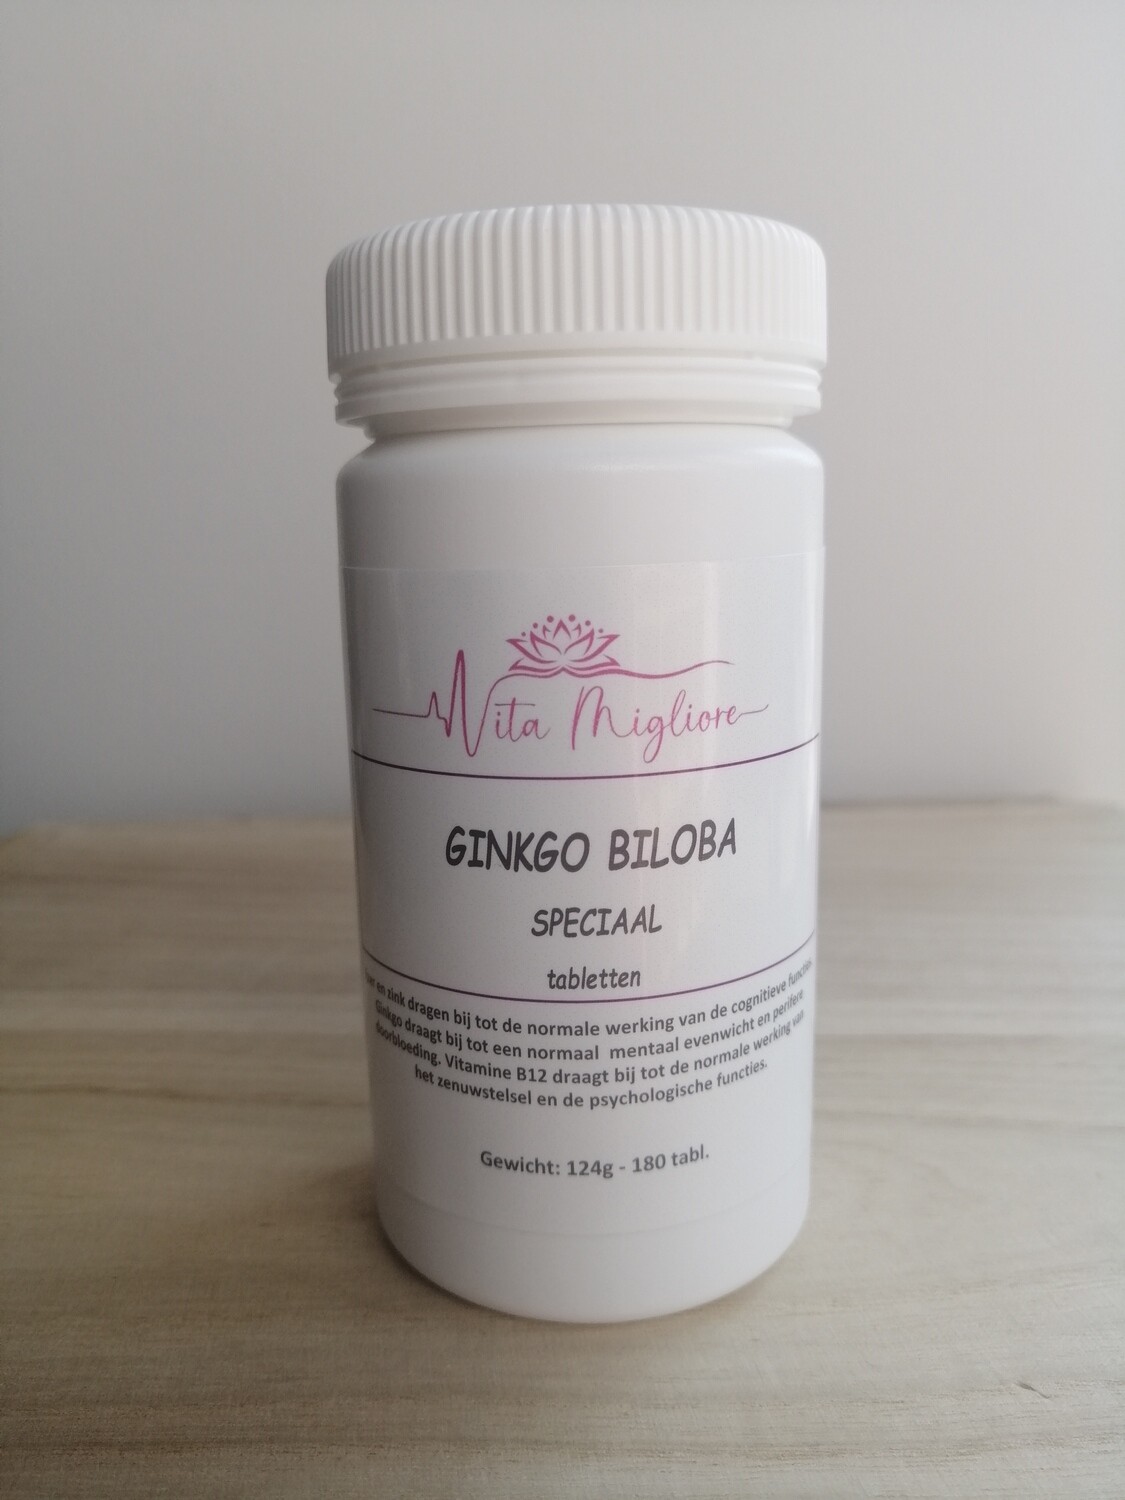 Ginkgo Biloba speciaal tabletten